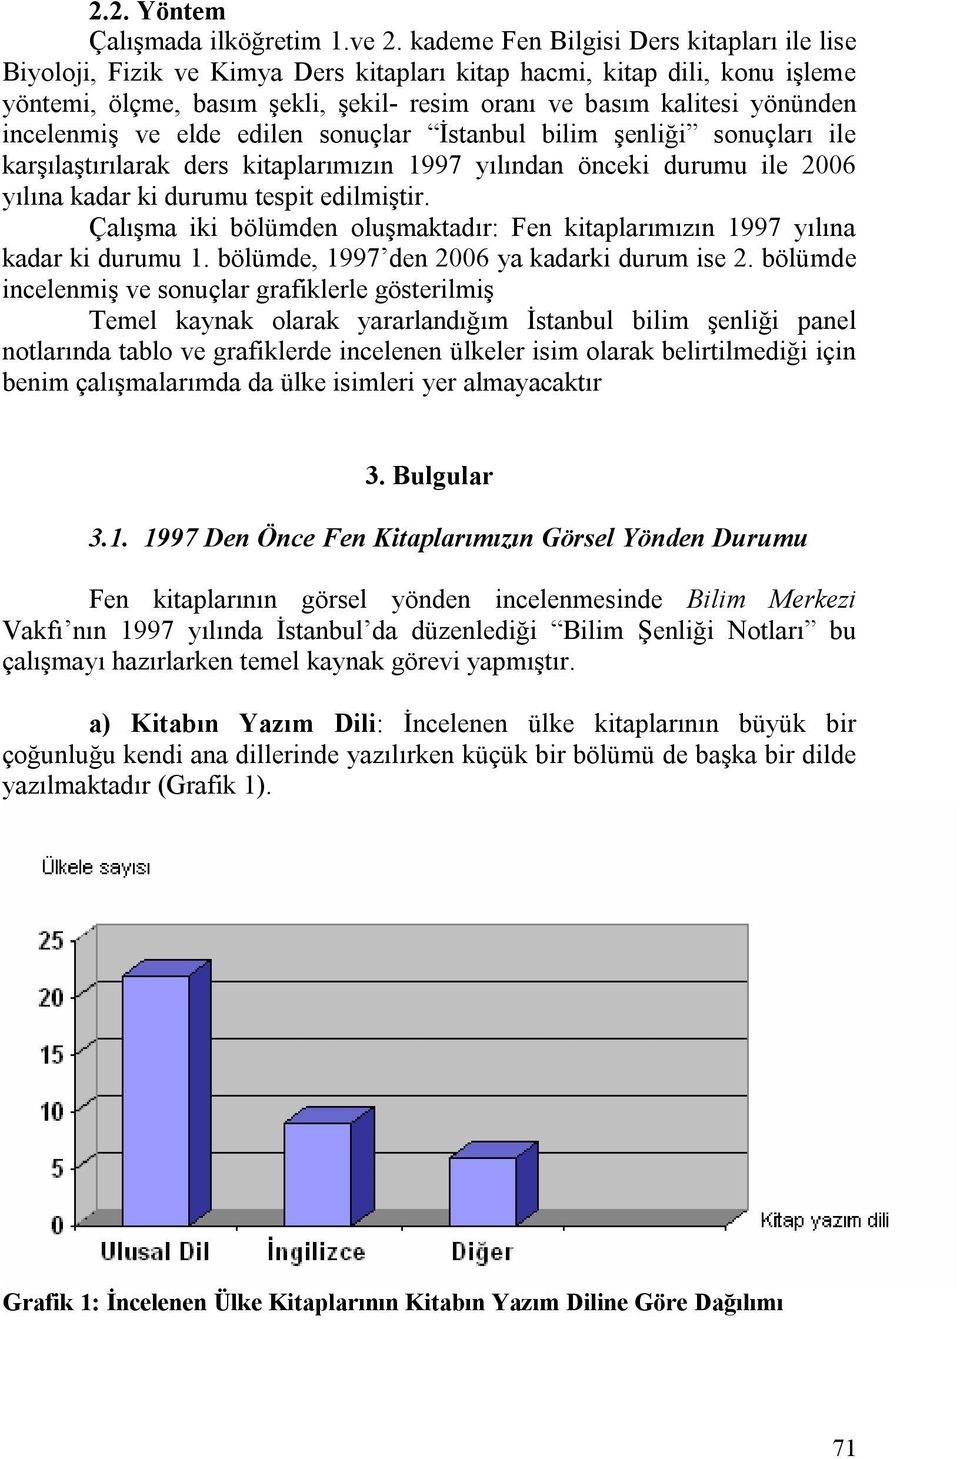 incelenmiş ve elde edilen sonuçlar İstanbul bilim şenliği sonuçları ile karşılaştırılarak ders kitaplarımızın 1997 yılından önceki durumu ile 2006 yılına kadar ki durumu tespit edilmiştir.